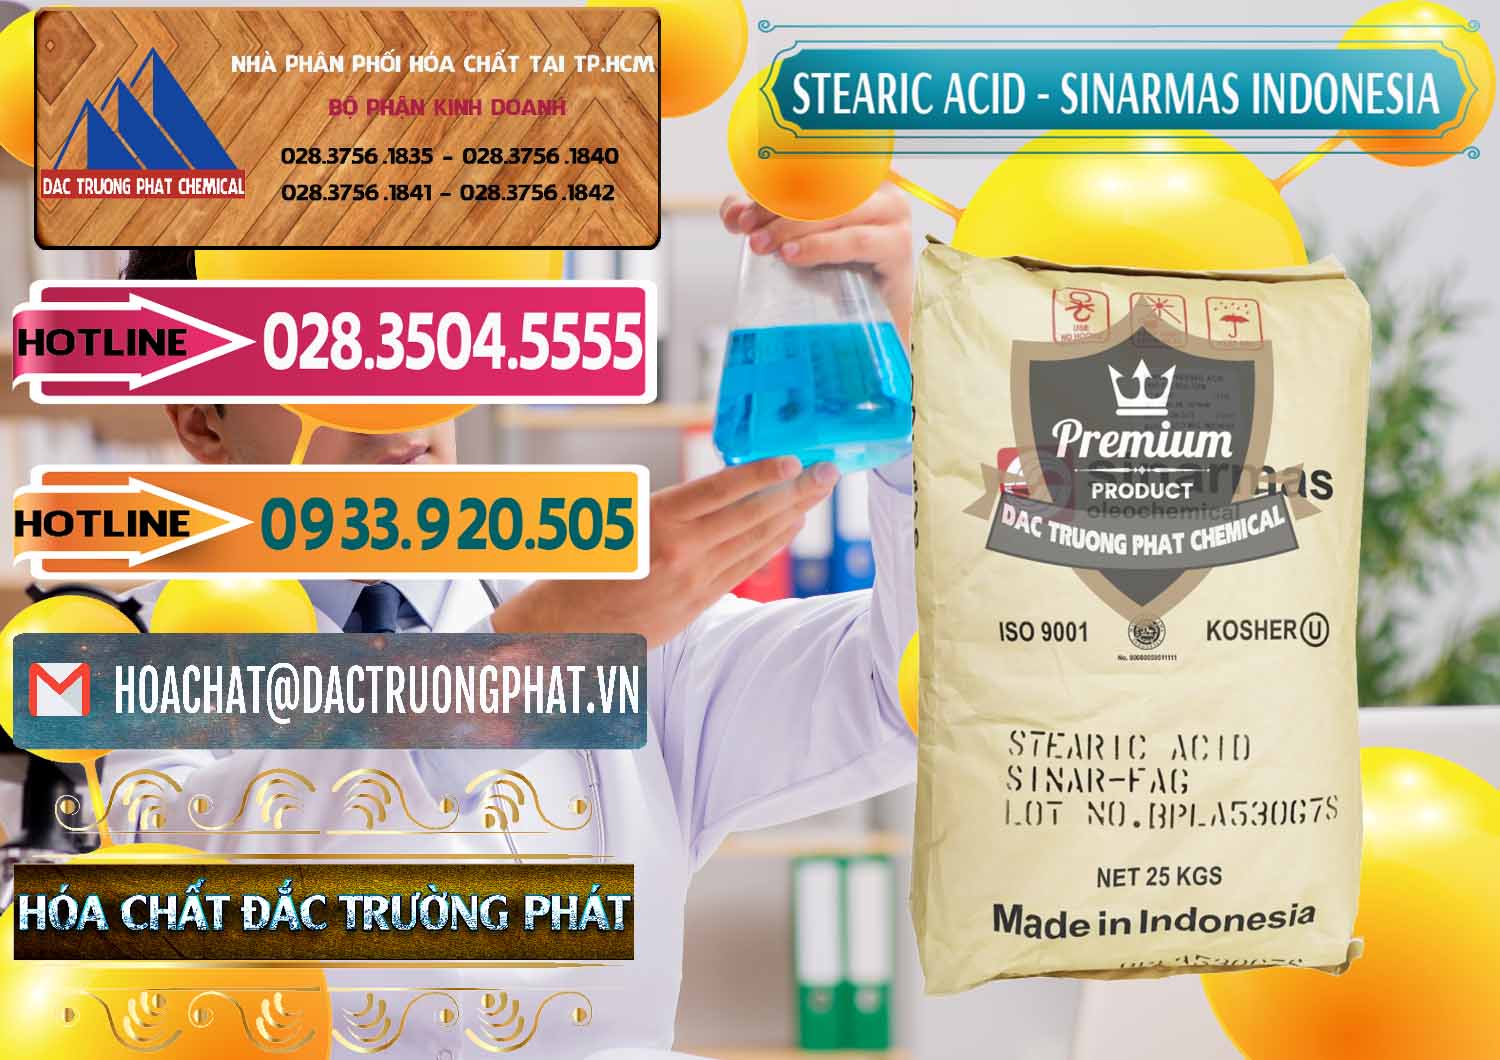 Nơi phân phối ( bán ) Axit Stearic - Stearic Acid Sinarmas Indonesia - 0389 - Công ty cung cấp - phân phối hóa chất tại TP.HCM - dactruongphat.vn